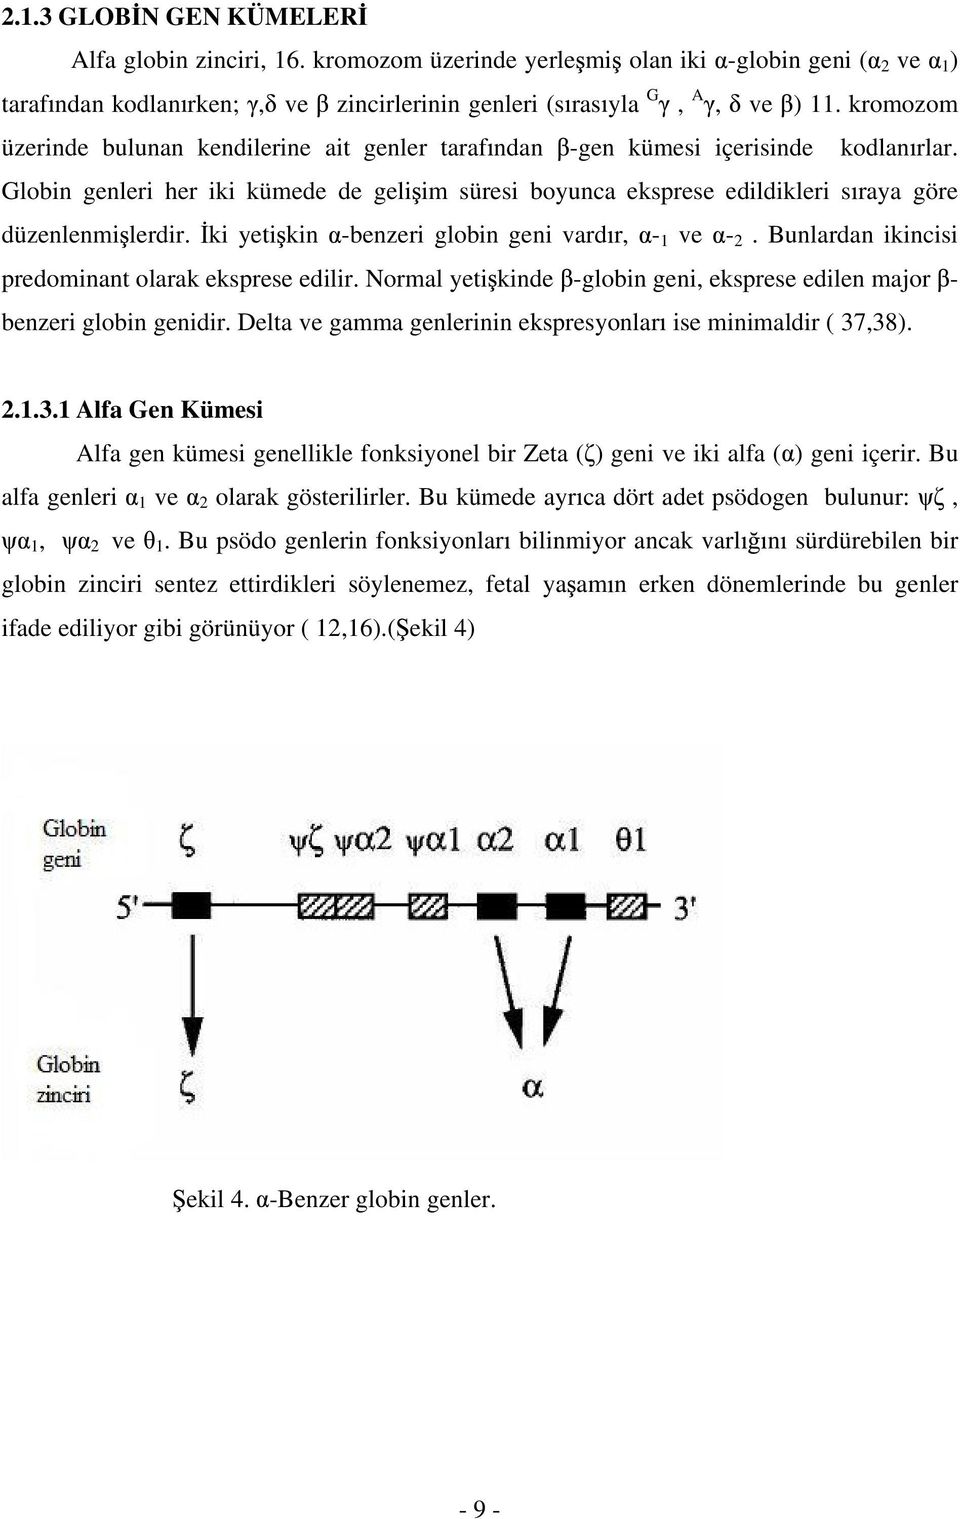 Globin genleri her iki kümede de geli im süresi boyunca eksprese edildikleri s raya göre düzenlenmi lerdir. ki yeti kin -benzeri globin geni vard r, - 1 ve - 2.